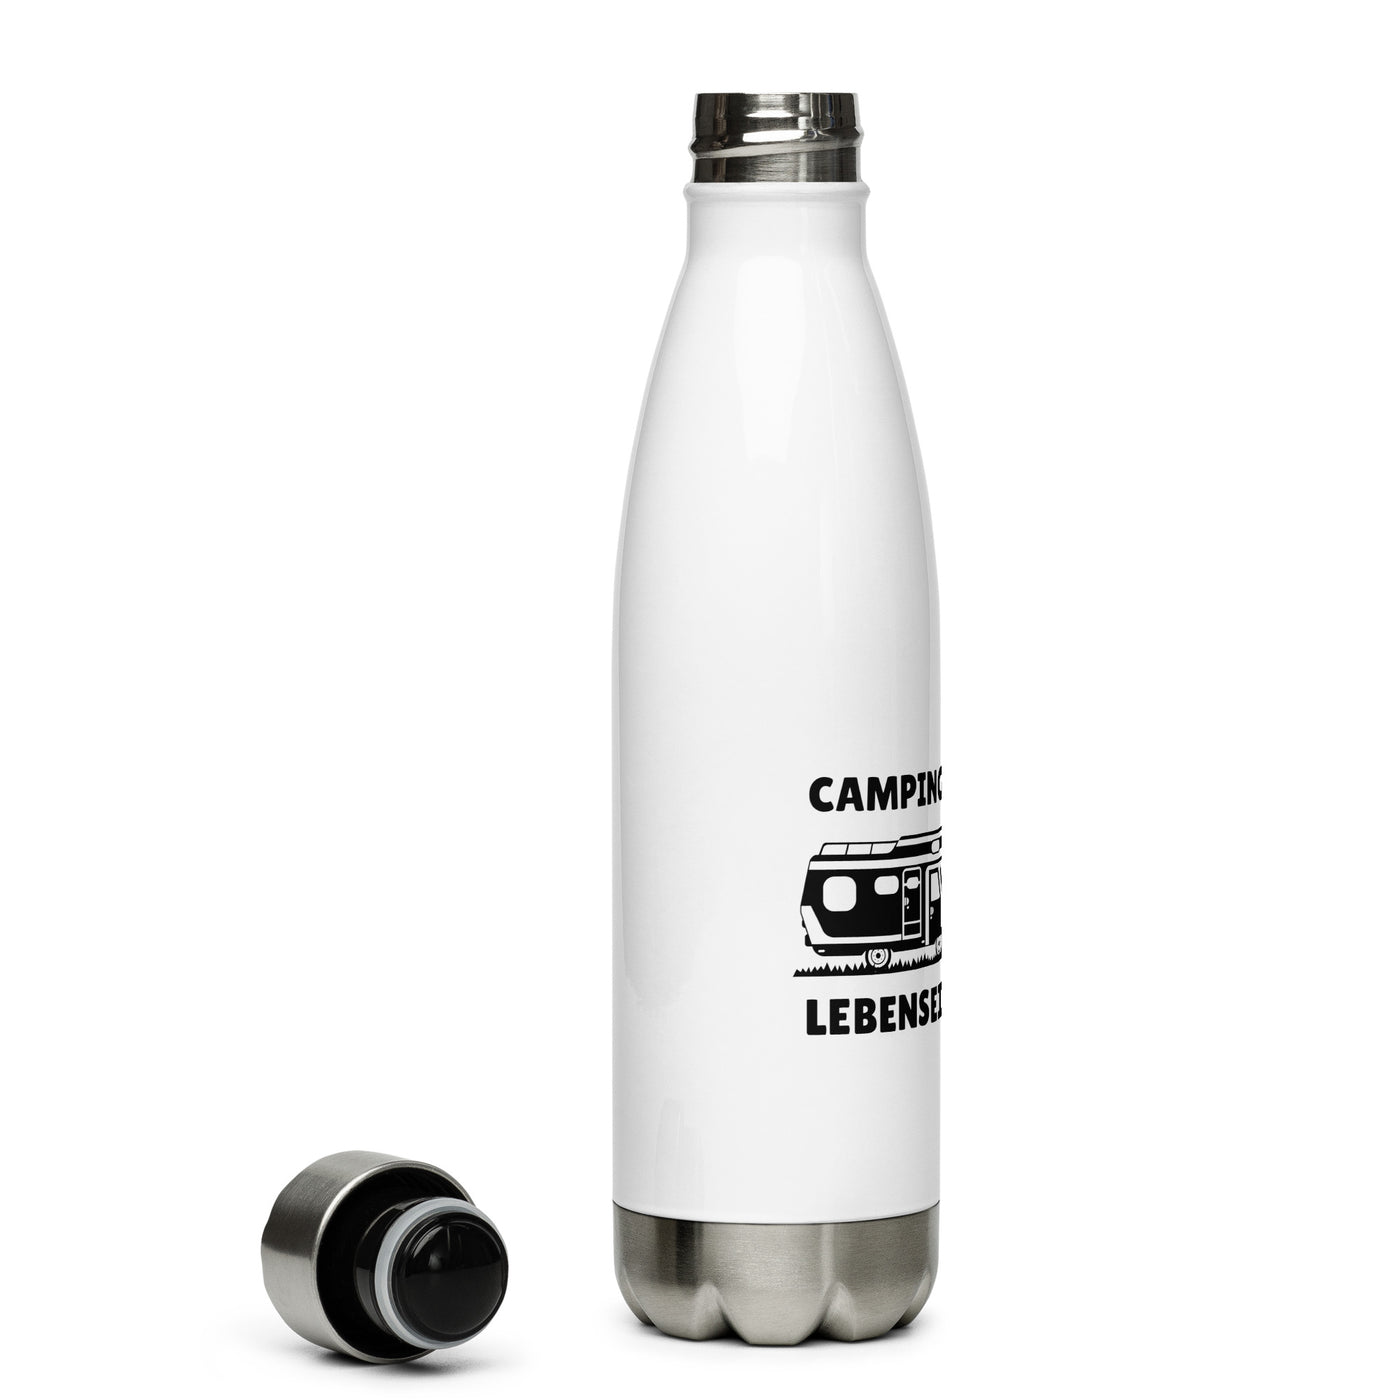 Camping Ist Meine Lebenseinstellung - Edelstahl Trinkflasche camping